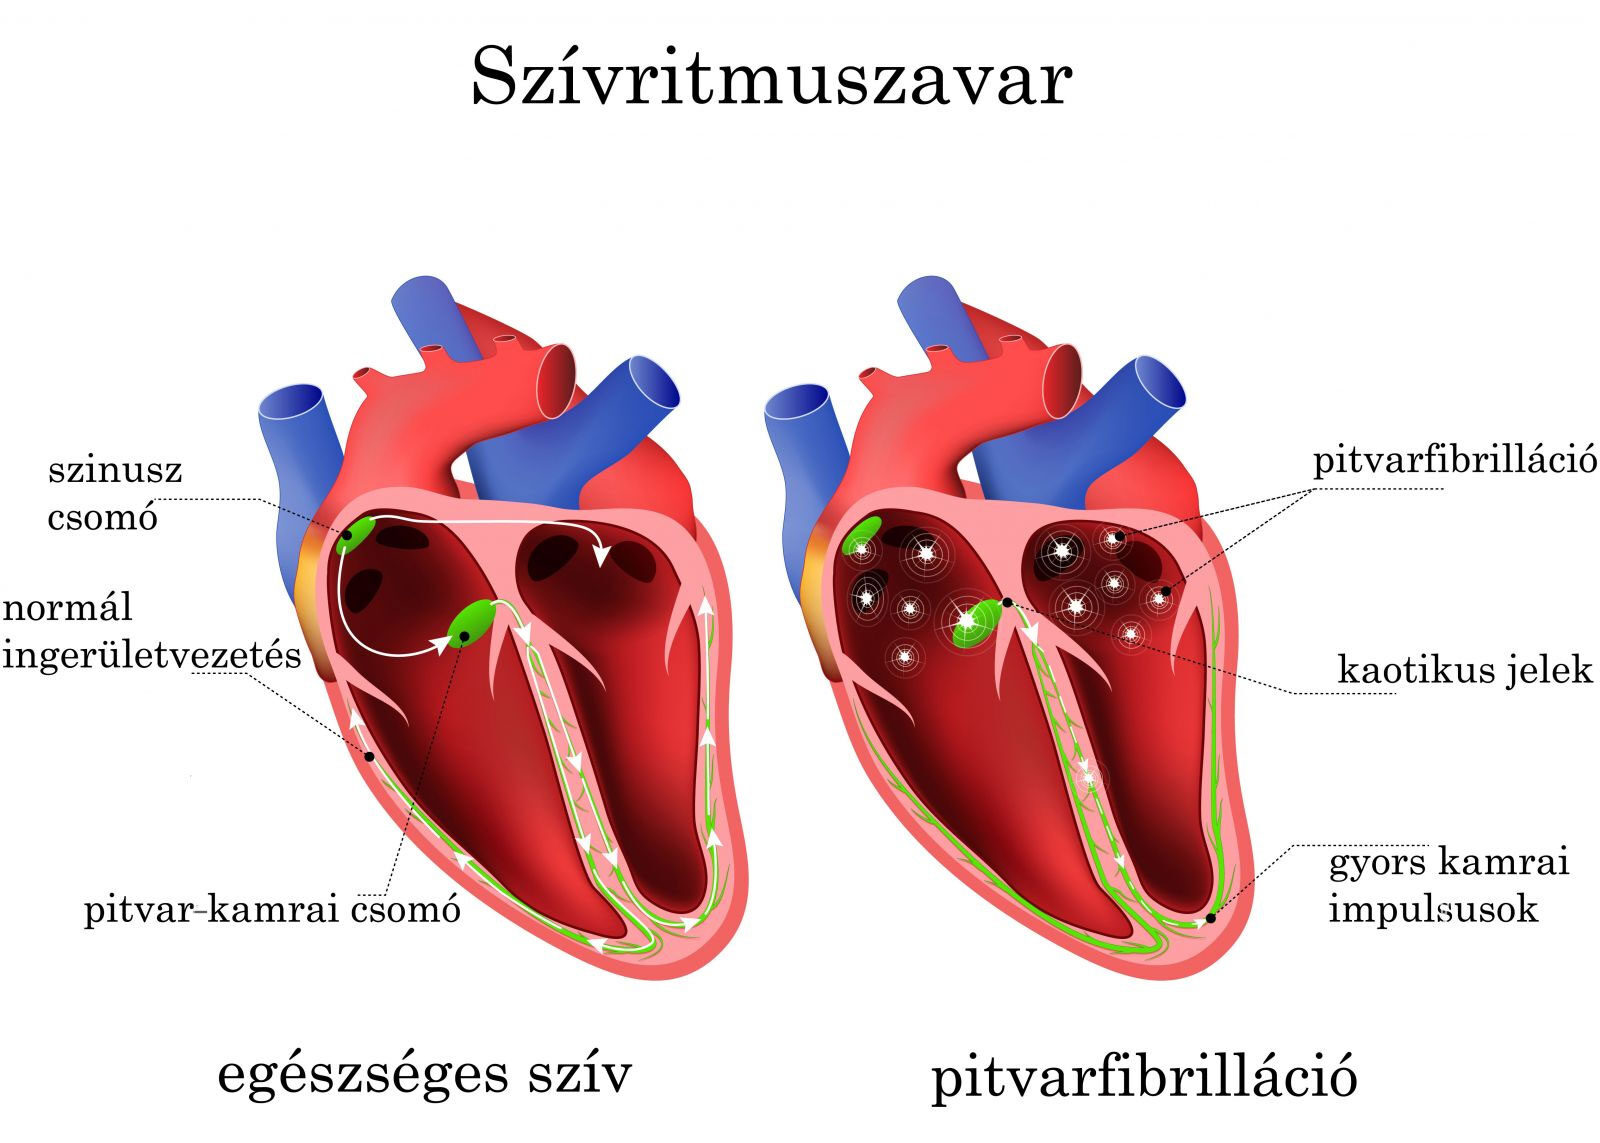 Egészséges szív/Pitvarfibrilláció